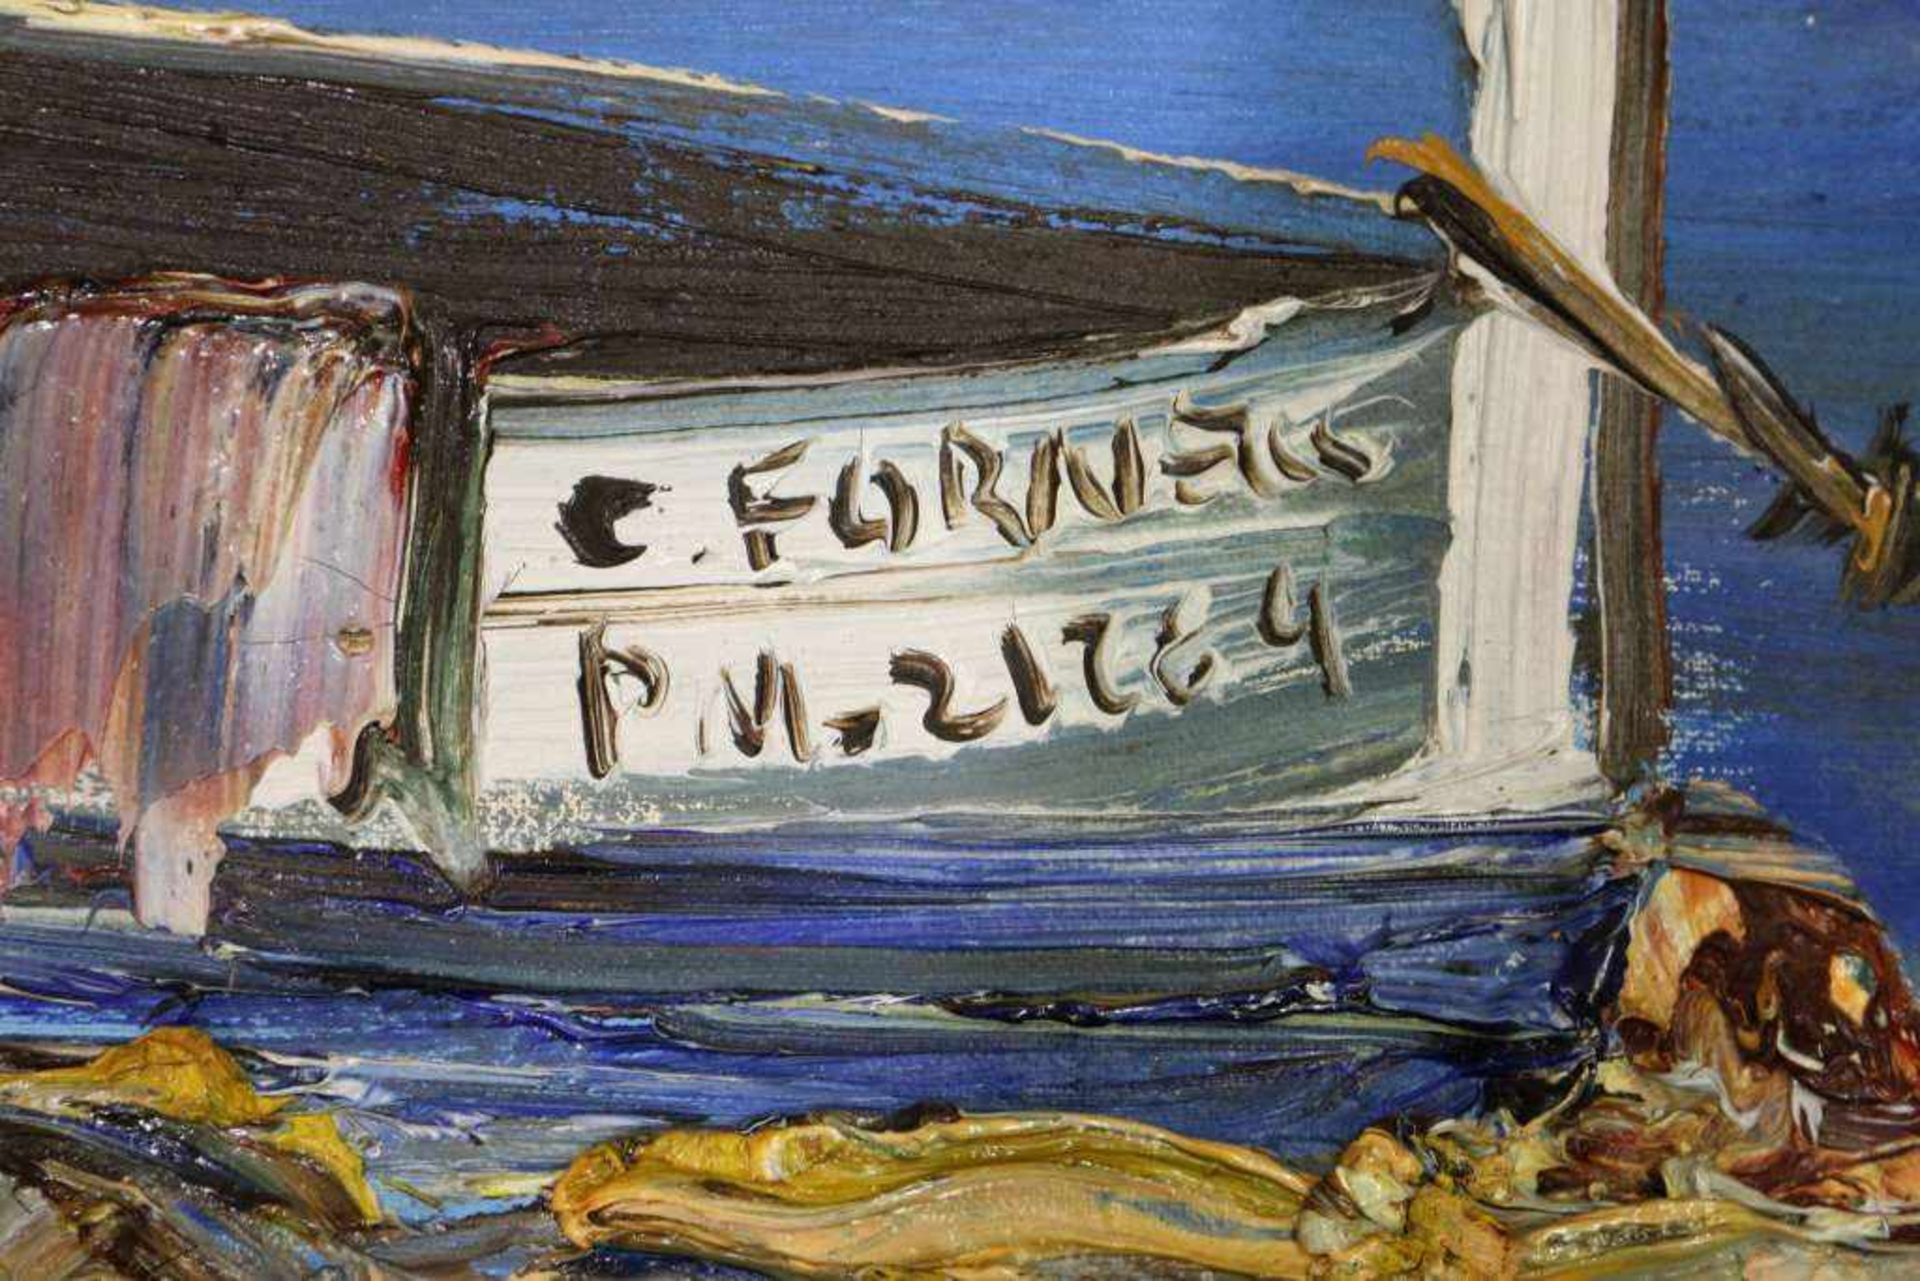 Künstler des 20. Jh., Gemälde, Inschrift auf dem Boot C. Fornells unleserlich, rechts sign. DALIA, - Bild 3 aus 5